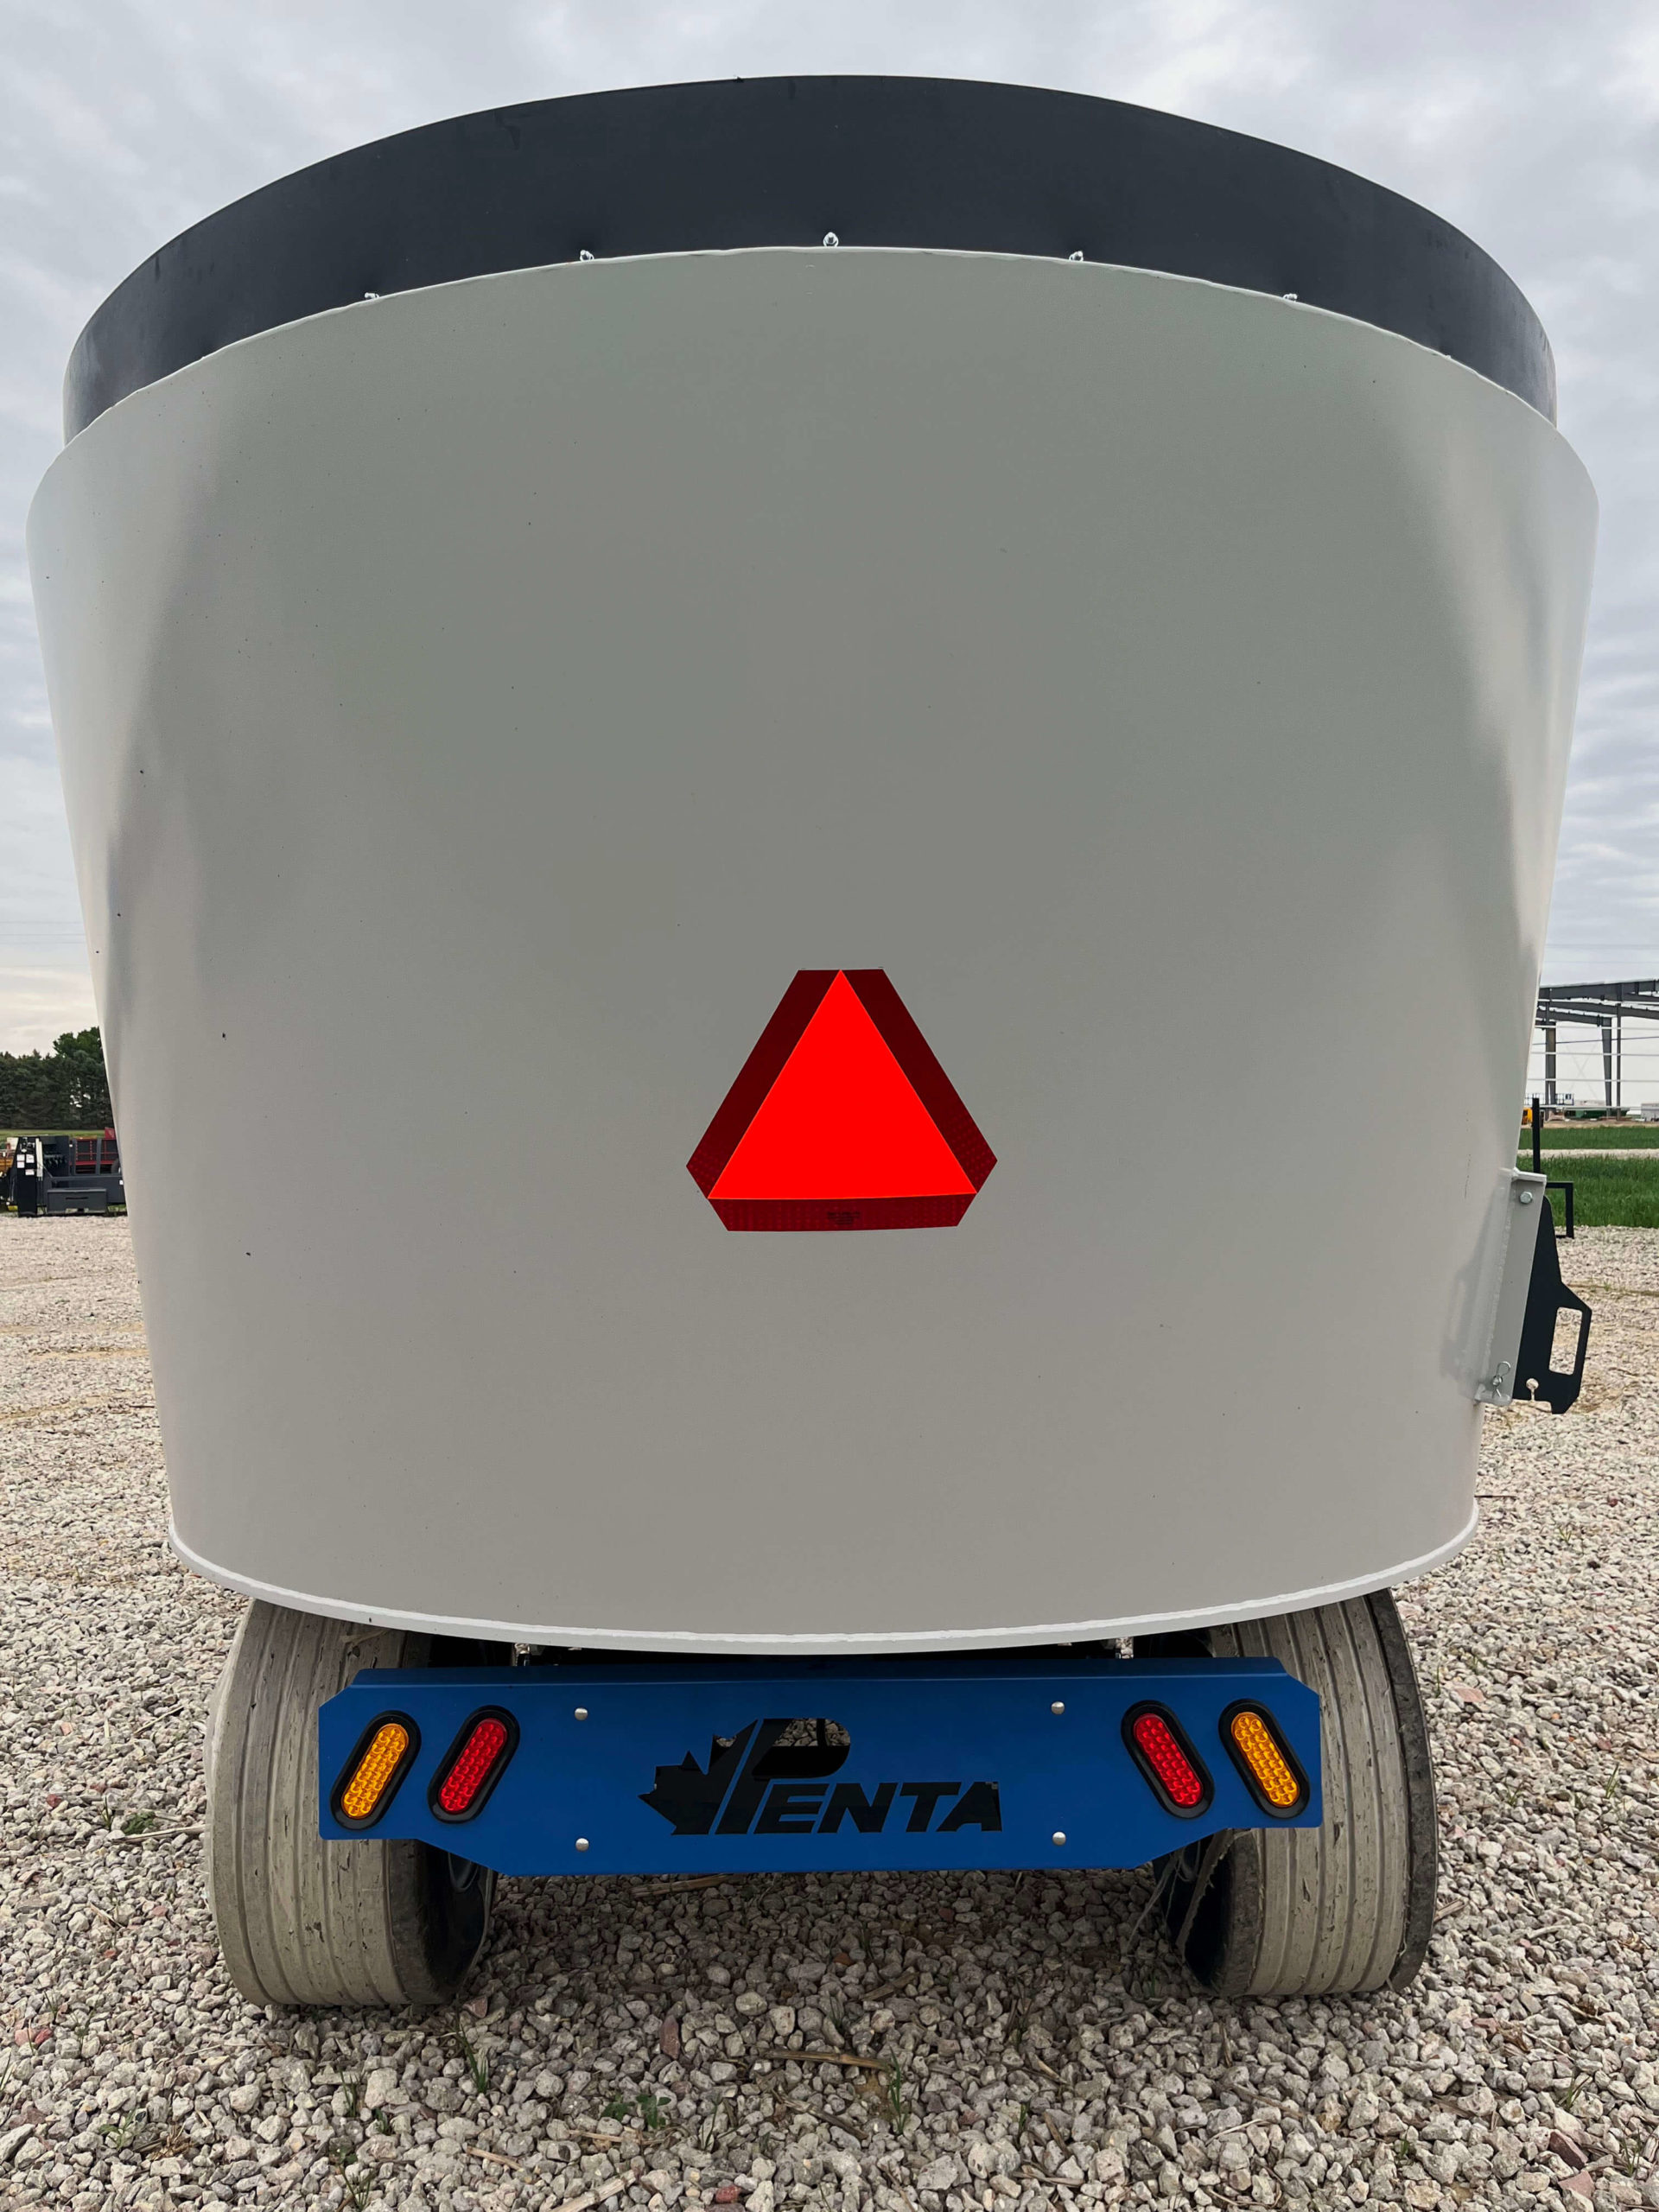 Penta-4930-Vertical-Mixer-Wagon